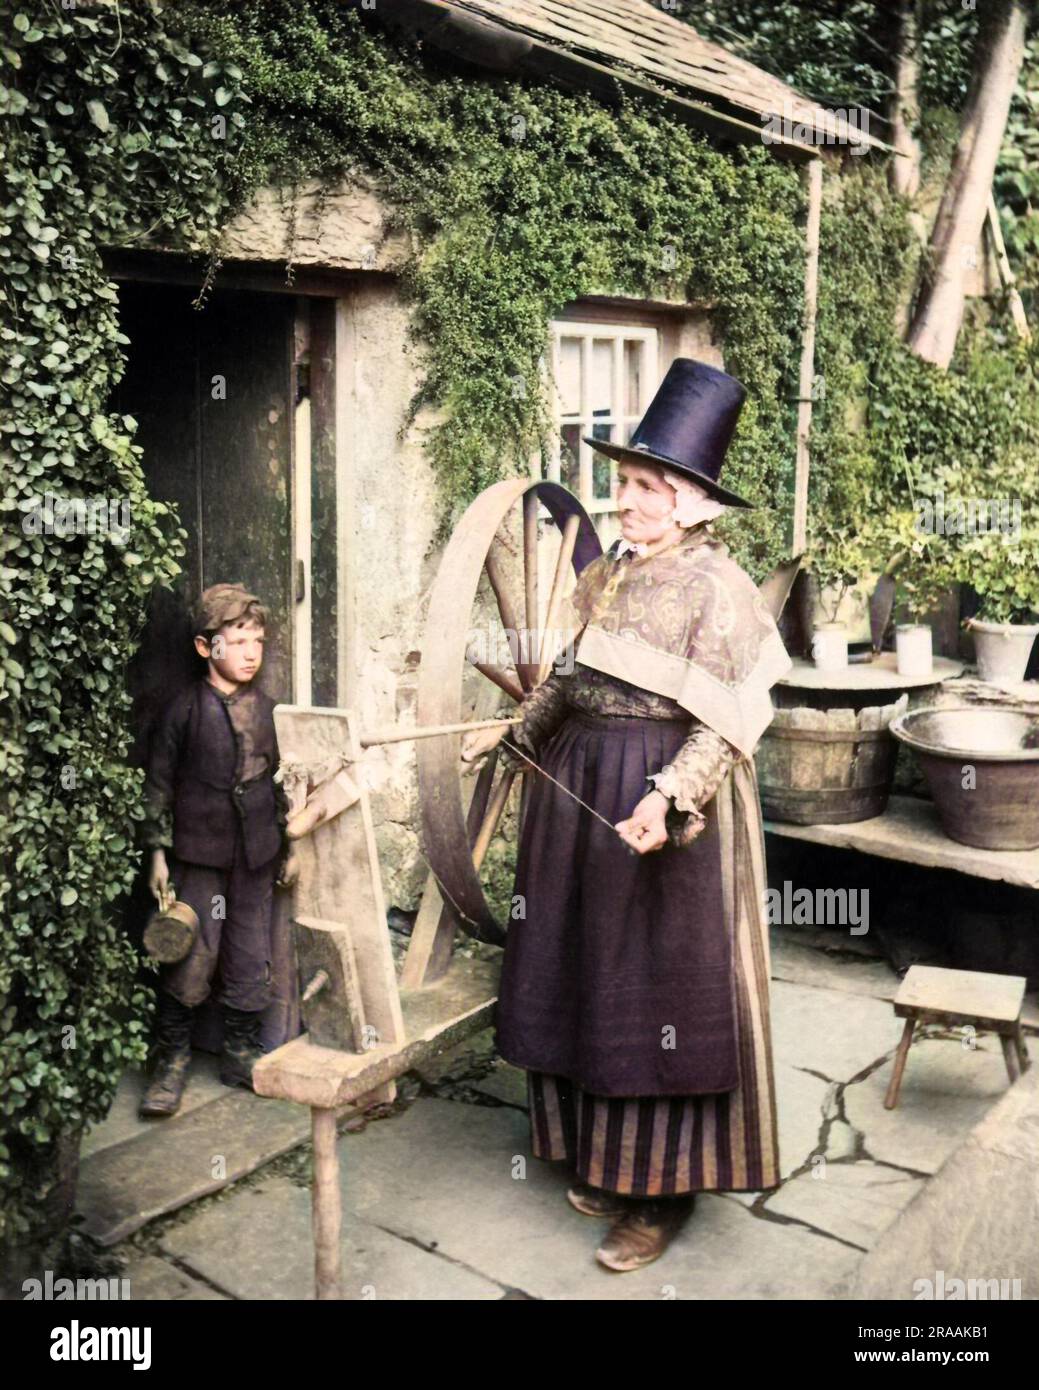 Femme galloise à l'extérieur d'un chalet avec roue tournante, pays de Galles. Date : fin du 19th siècle Banque D'Images